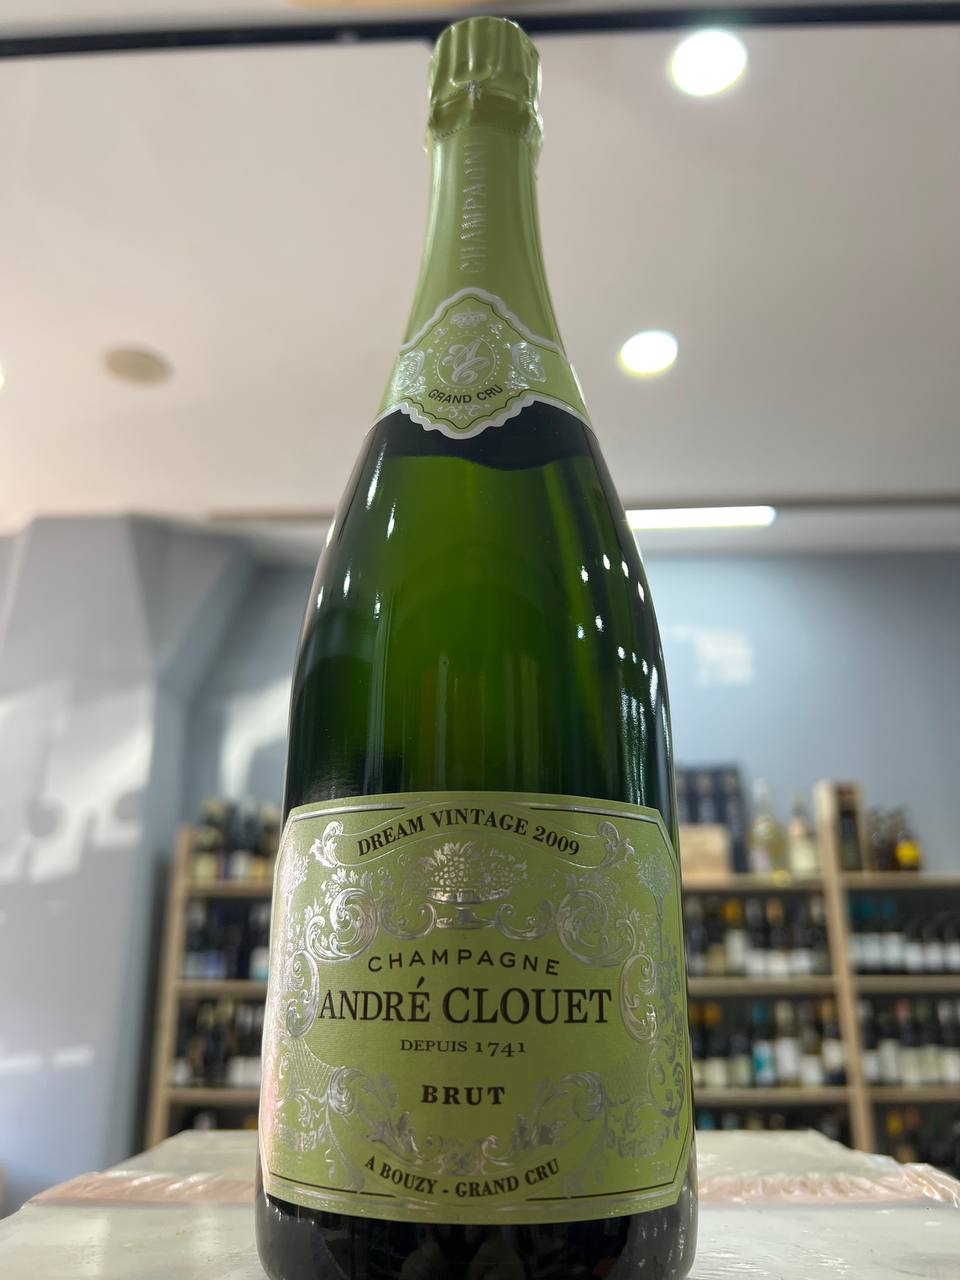 Dream Vintage 2009 André Clouet Champagne Brut